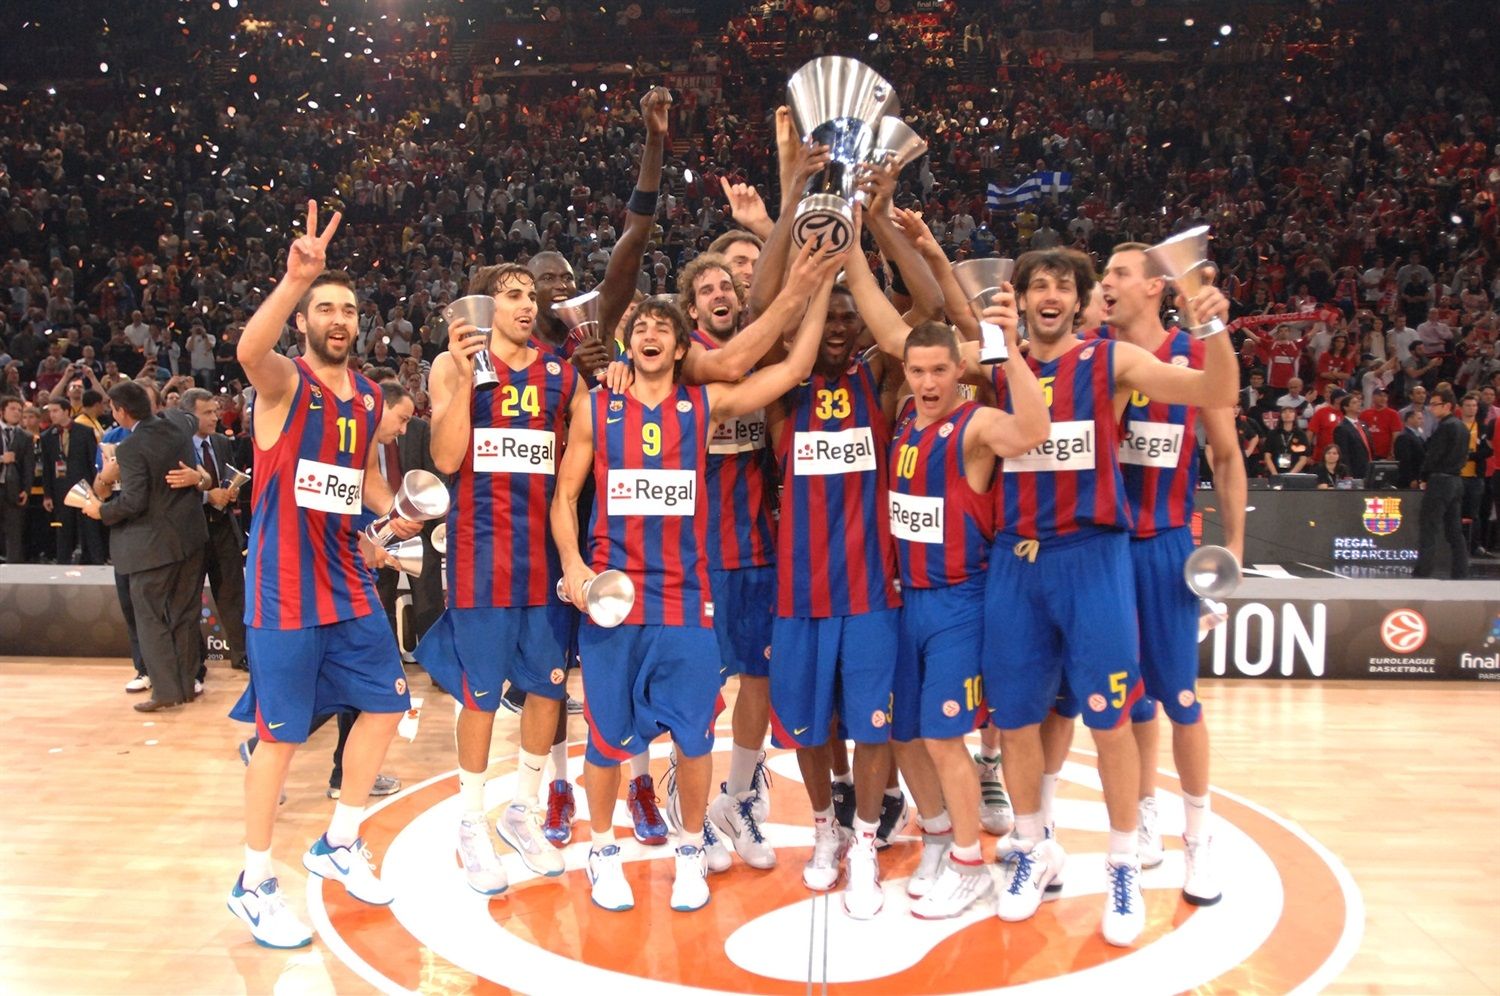 Regal FC Barcelona levantando el titulo de la Euroliga obtenido en Paris 2010 (Fuente: Web Euroleague.com)